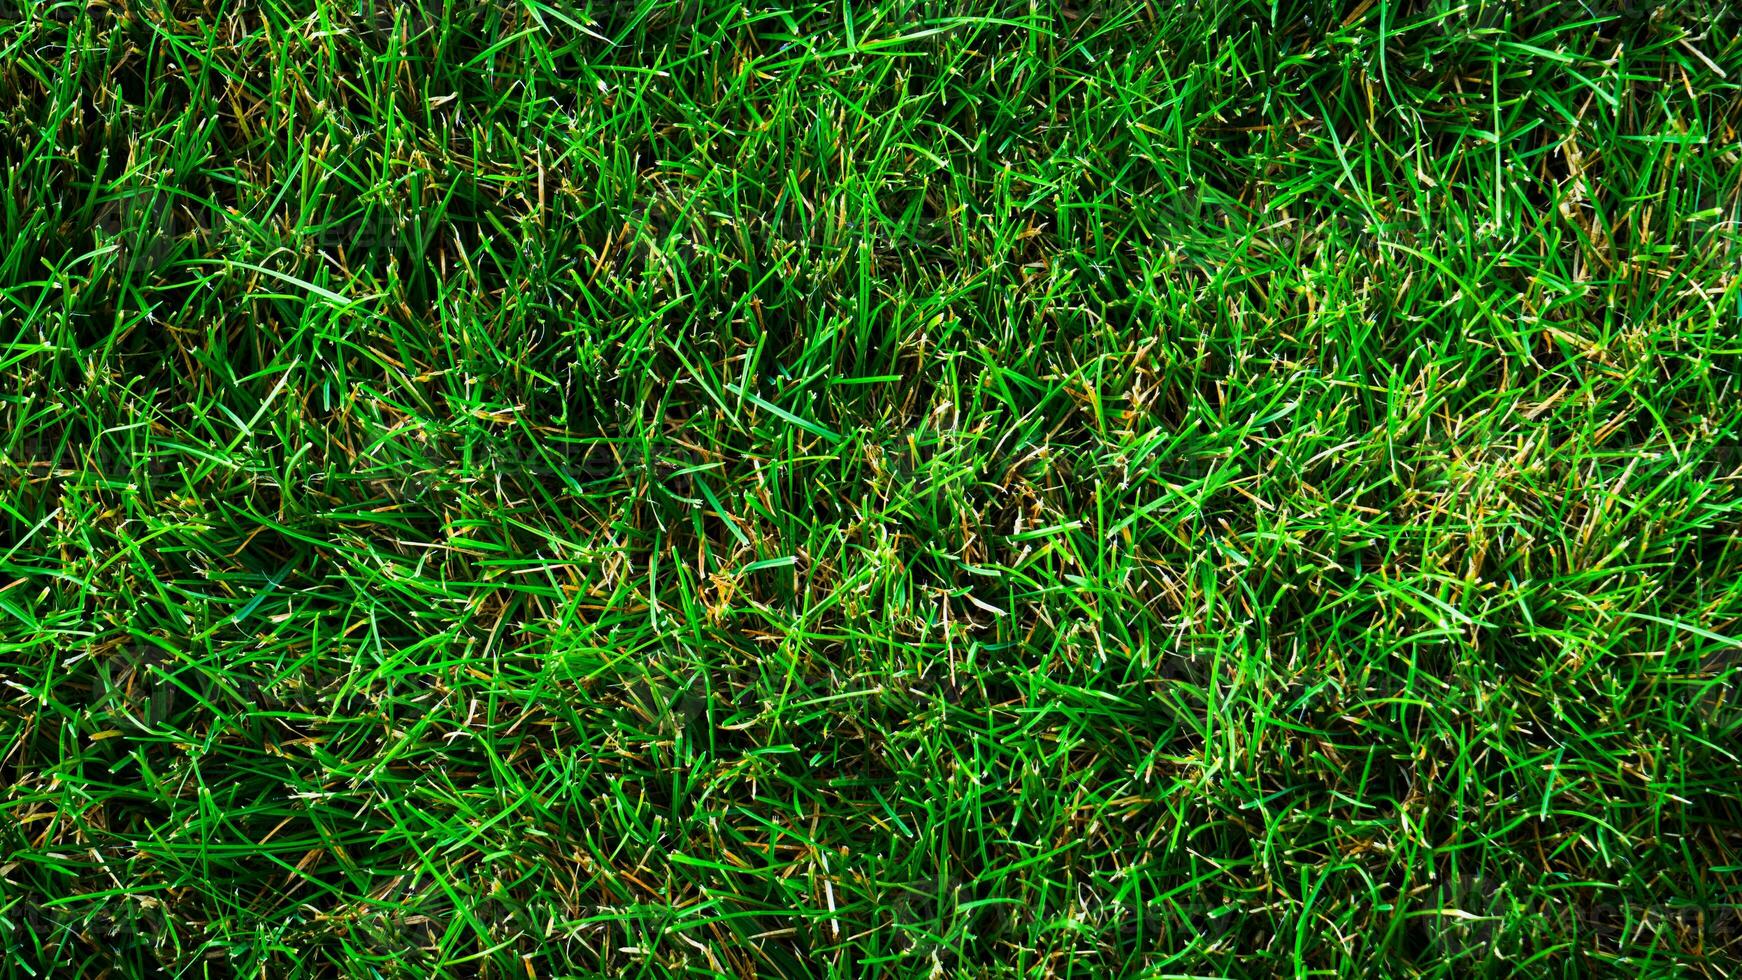 struttura sfondo di verde erba foto